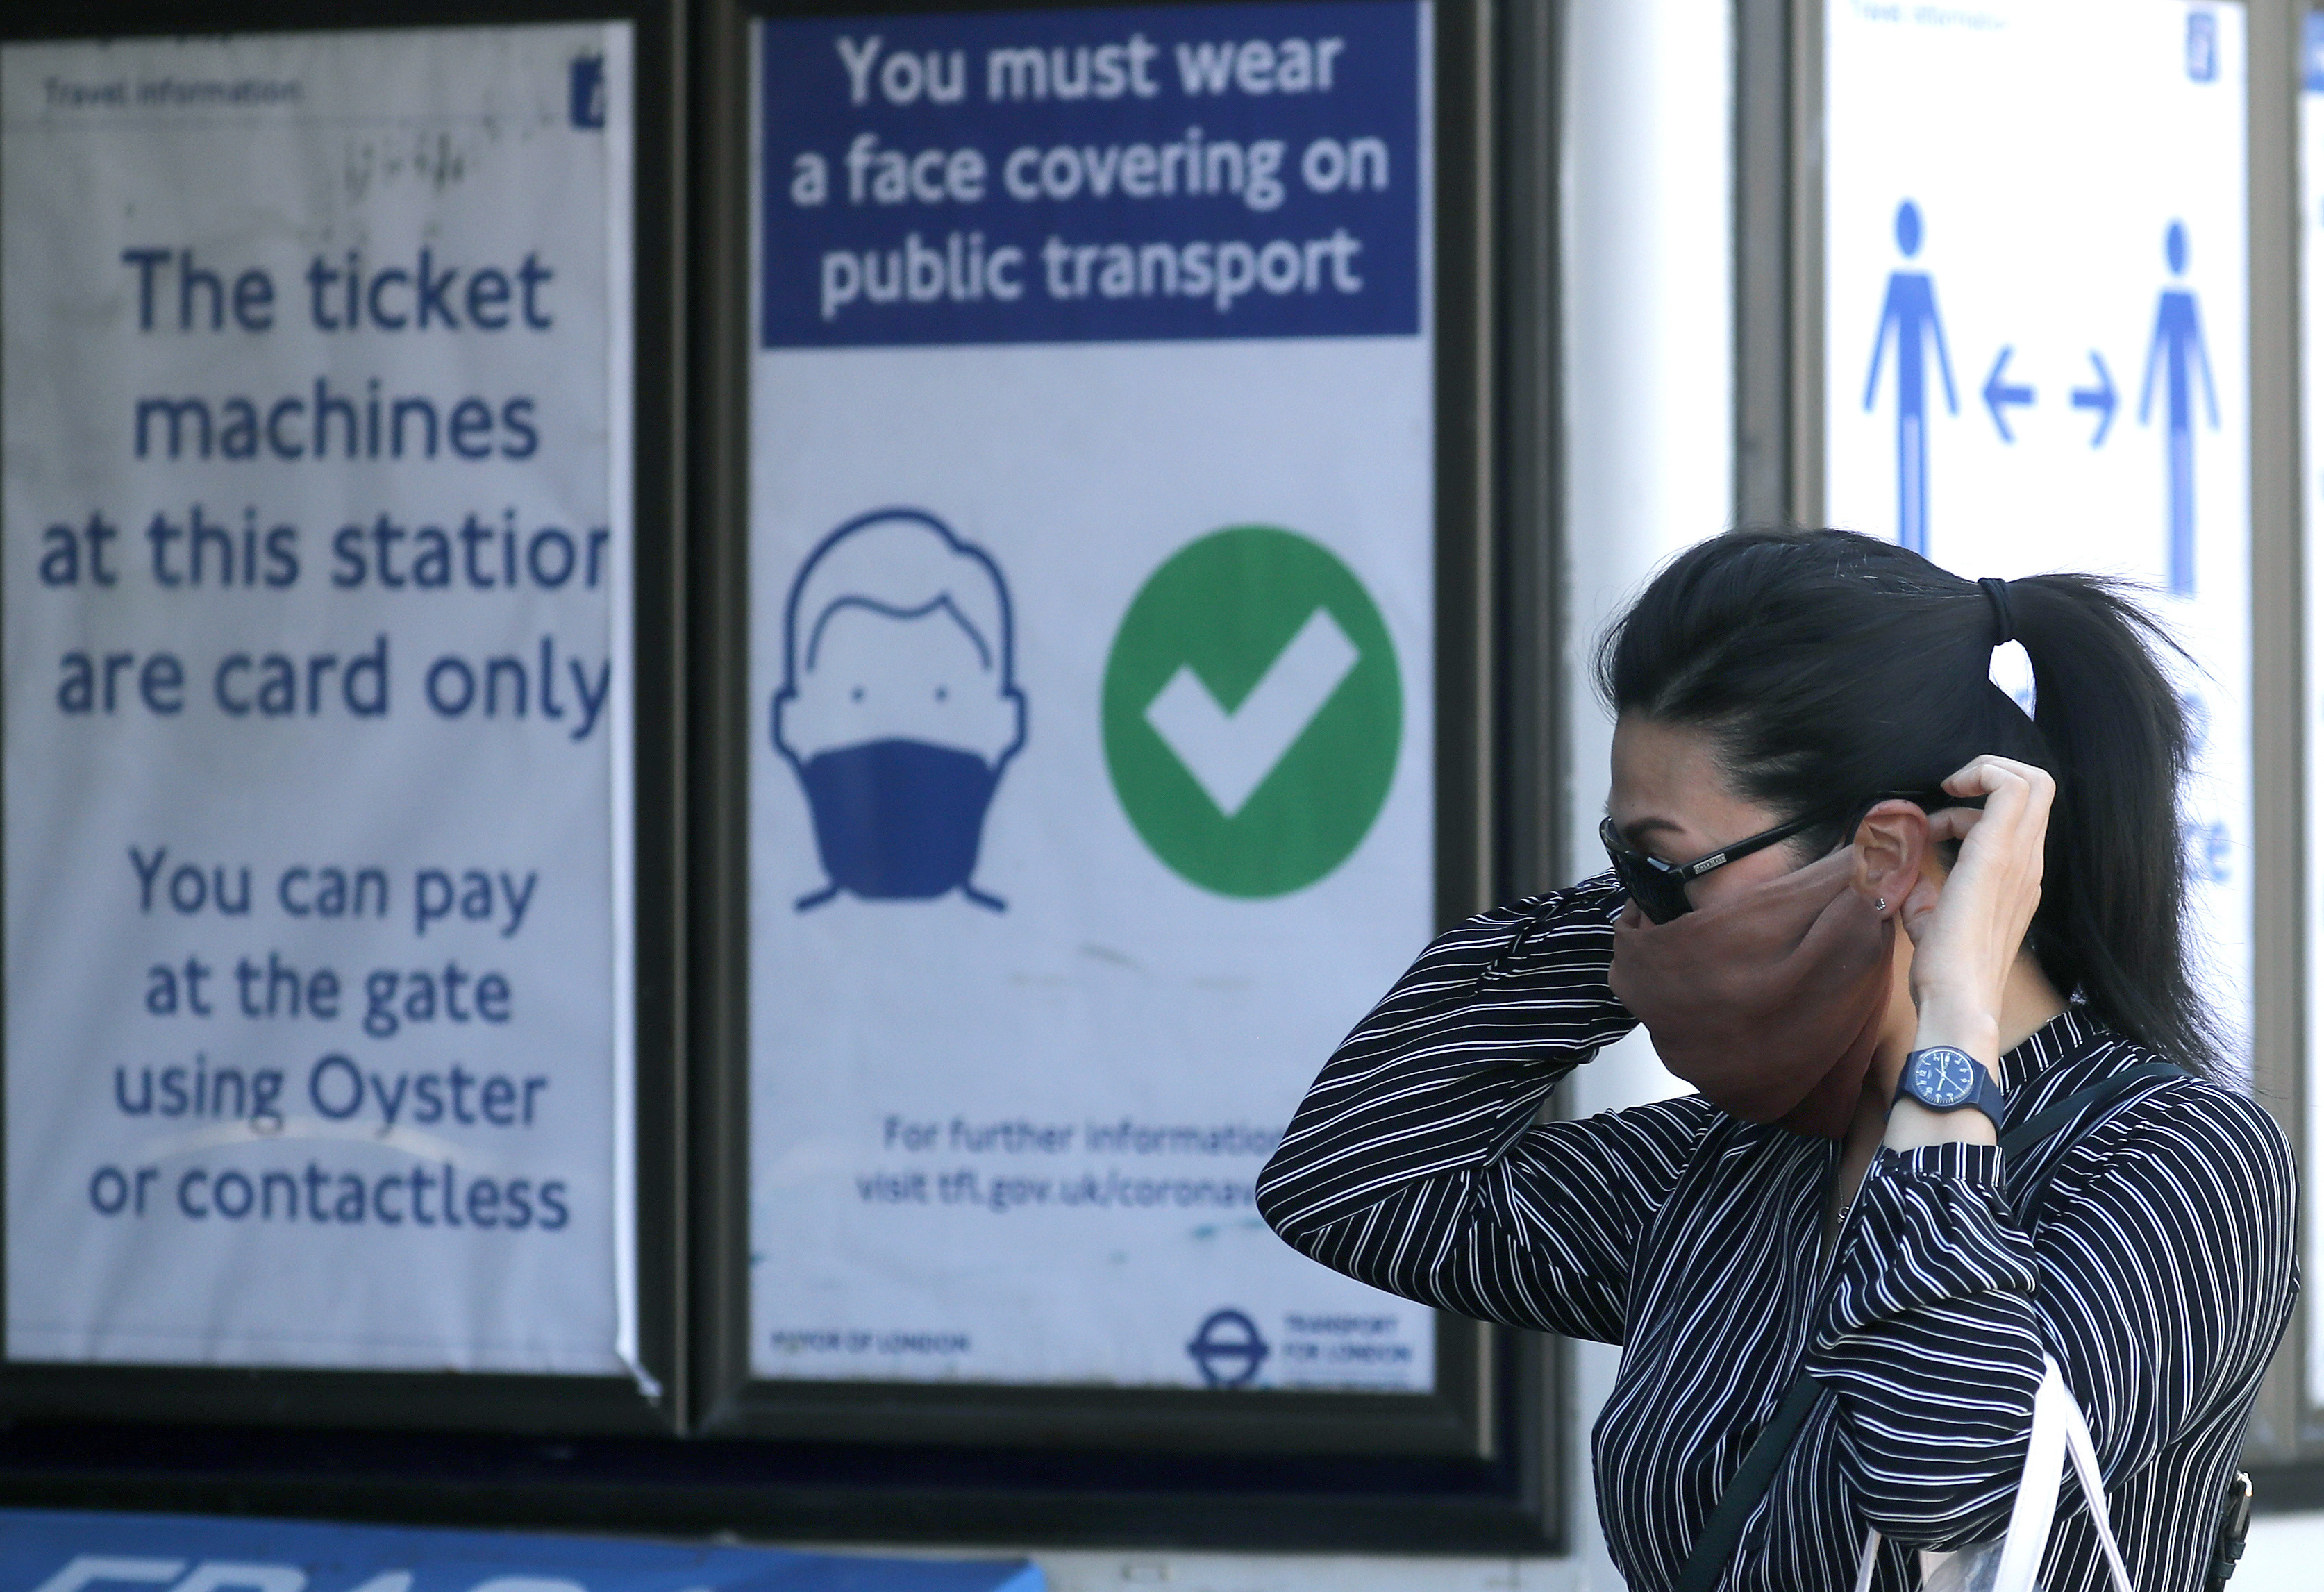 Cestujúca si dáva na tvár rúško pred vstupom na zastávku metra v Londýne v pondelok 15. júna 2020.